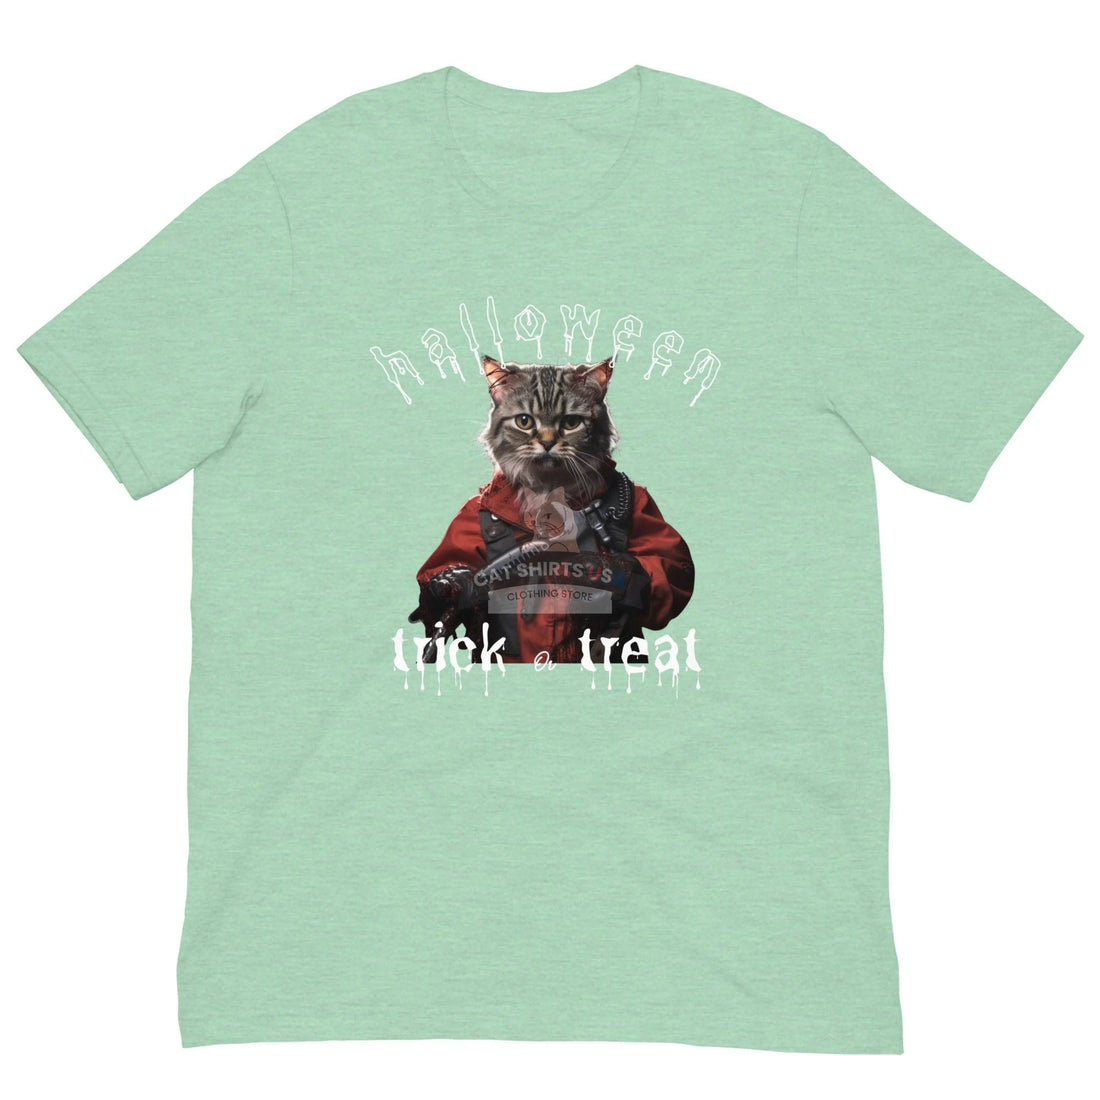 Trick or Treat Halloween Cat Shirt - Cat Shirts USA